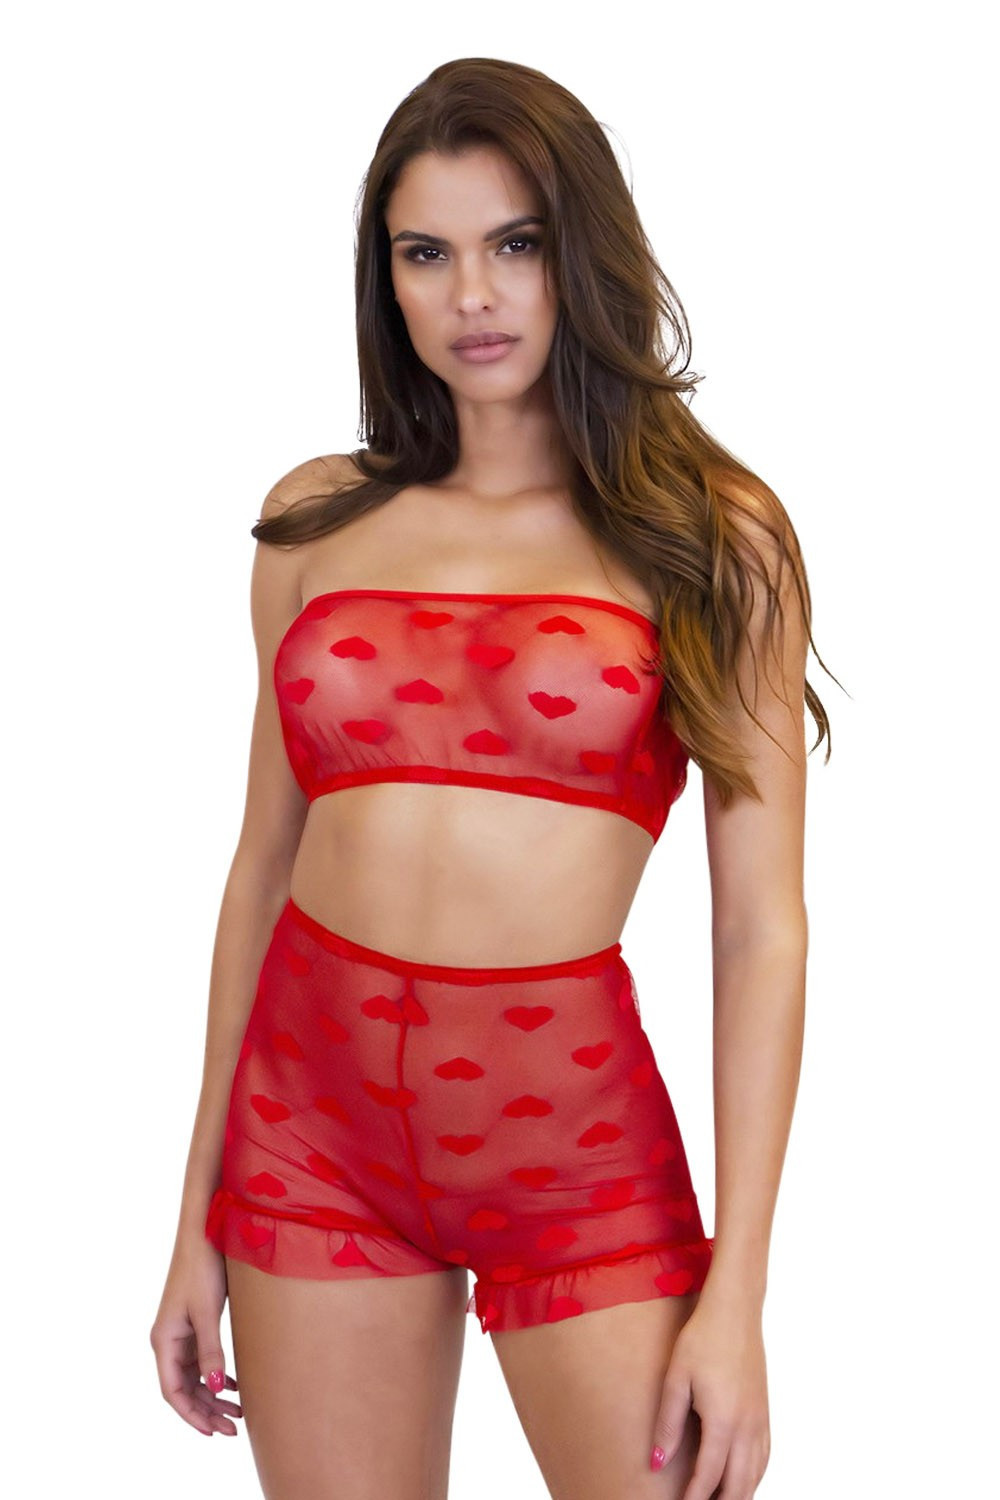 Red heart lingerie set